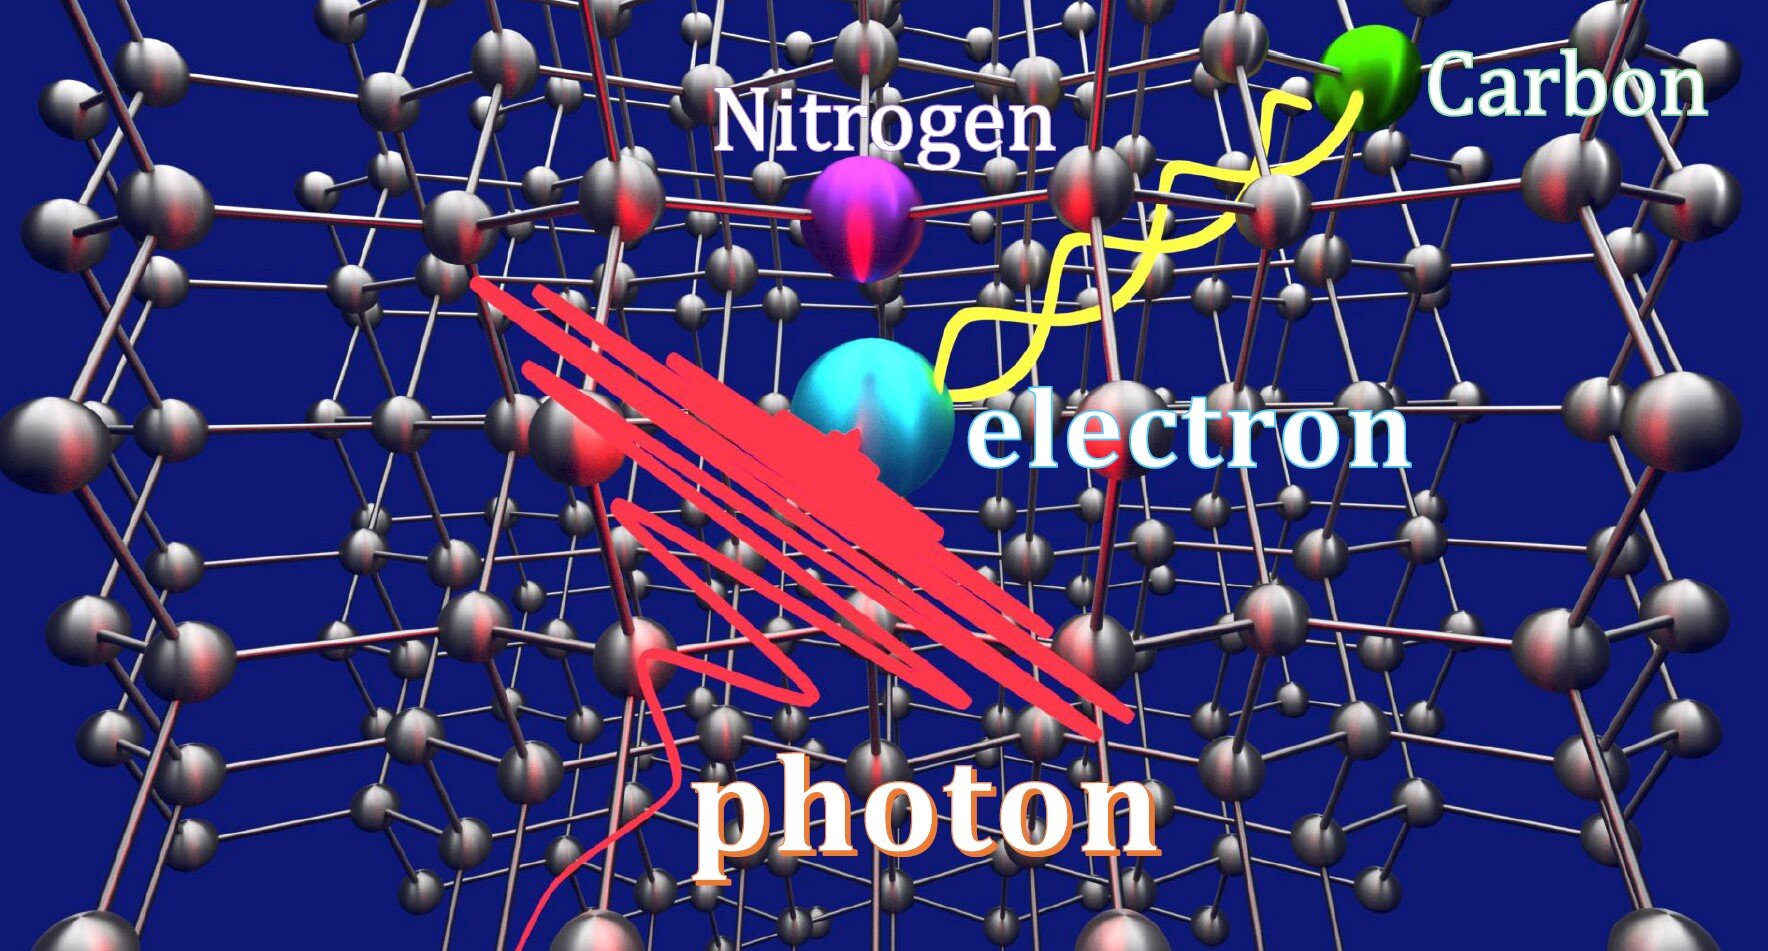 En la imagen se aprecia el isótopo de carbono (en verde) enredado con un electrón (azul) y un fotón (en rojo) que es absorbido por el electrón y lleva la información del fotón a la memoria del carbono mediante la teleportación cuántica. Crédito: Universidad Nacional de Yokohama.